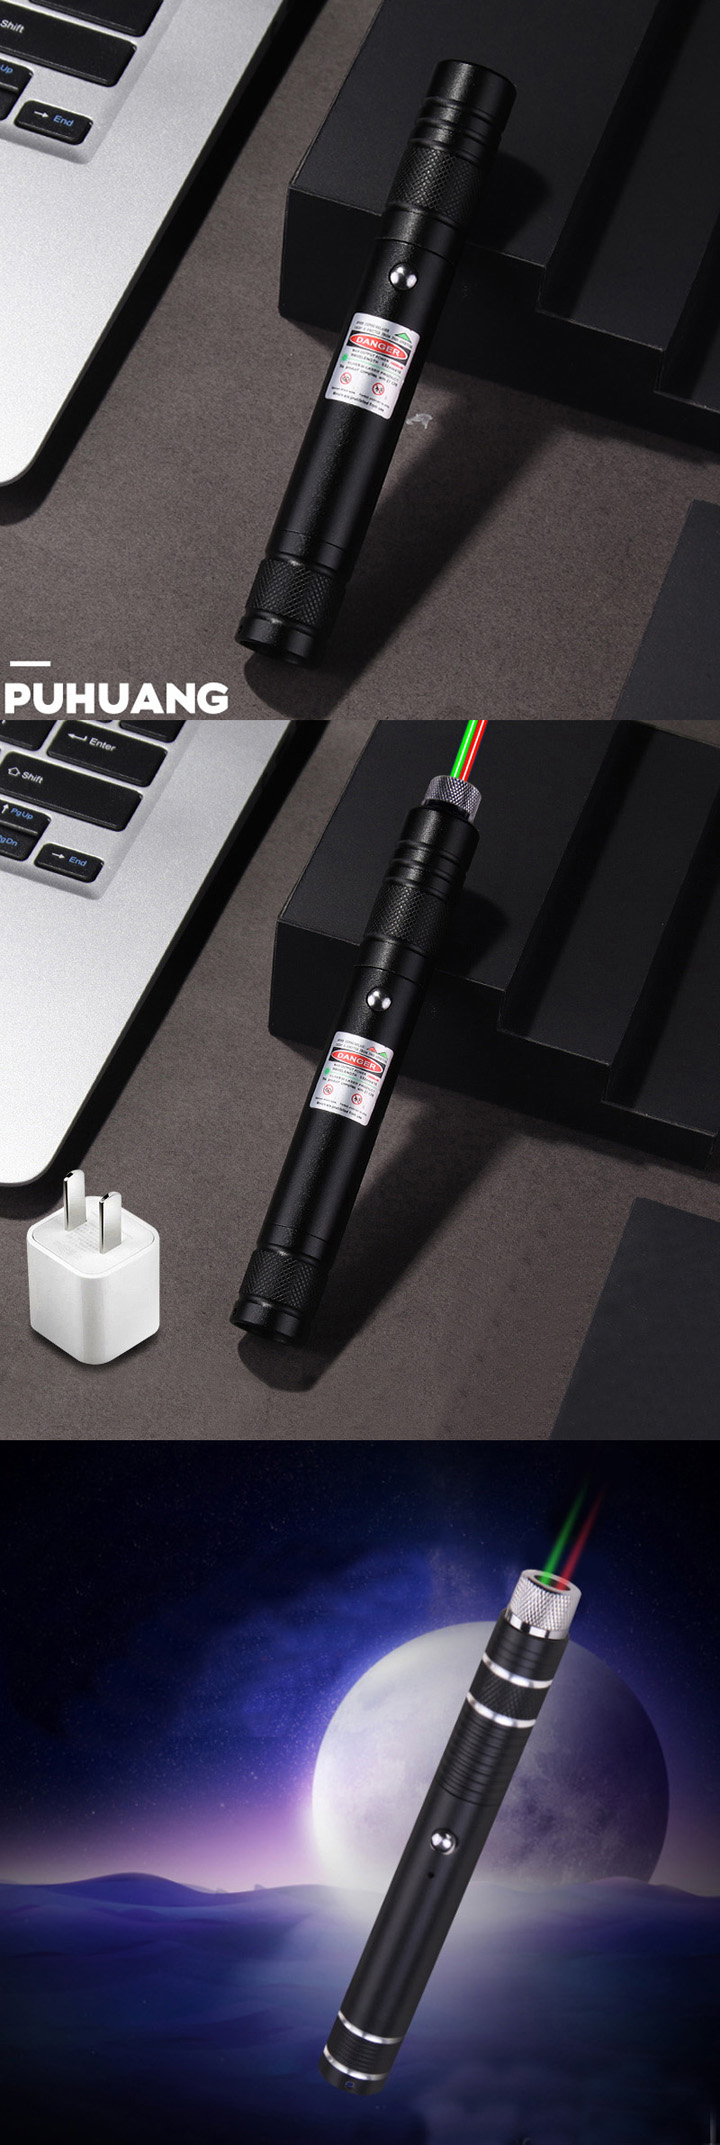 Pointeur laser vert USB pas cher et longue portée 150mW 532nm